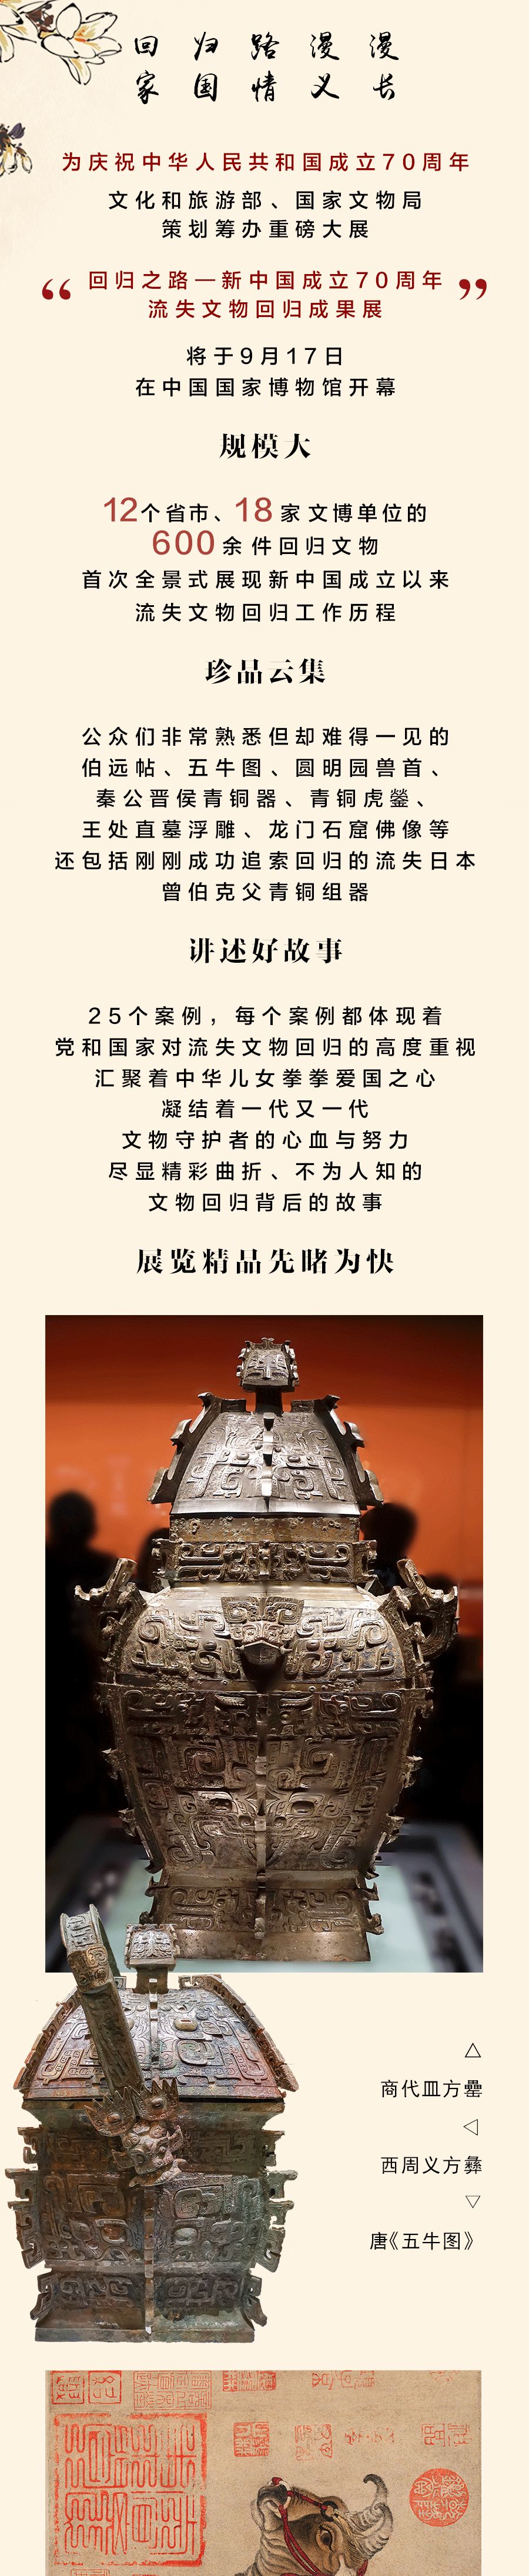 中国年度重磅大展开幕600件回归文物全景亮相